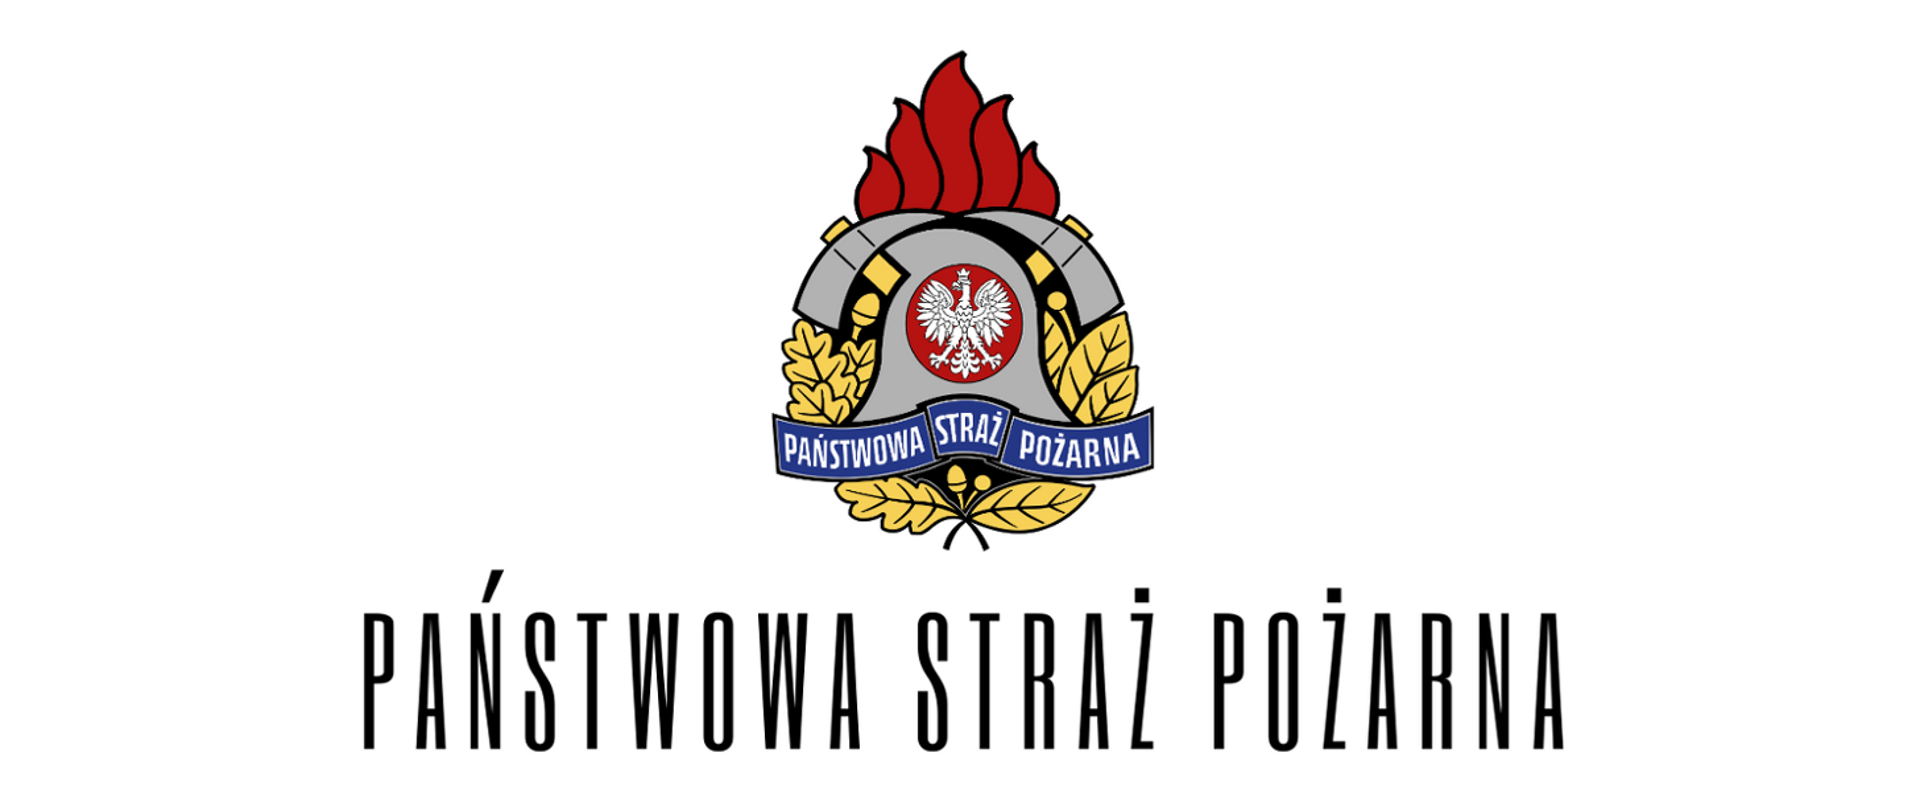 W środkowej części logo PSP, które składa się z białego orła w czerwonym okręgu, za orłem srebrny hełm i wystające ponad hełm 2 toporki strażackie, poniżej orła napis biały Państwowa Straż Pożarna na niebieskim tle, na prawym i lewym krańcu logo oraz na dole złote liście. Poniżej loga czarny napis Państwowa Straż Pożarna